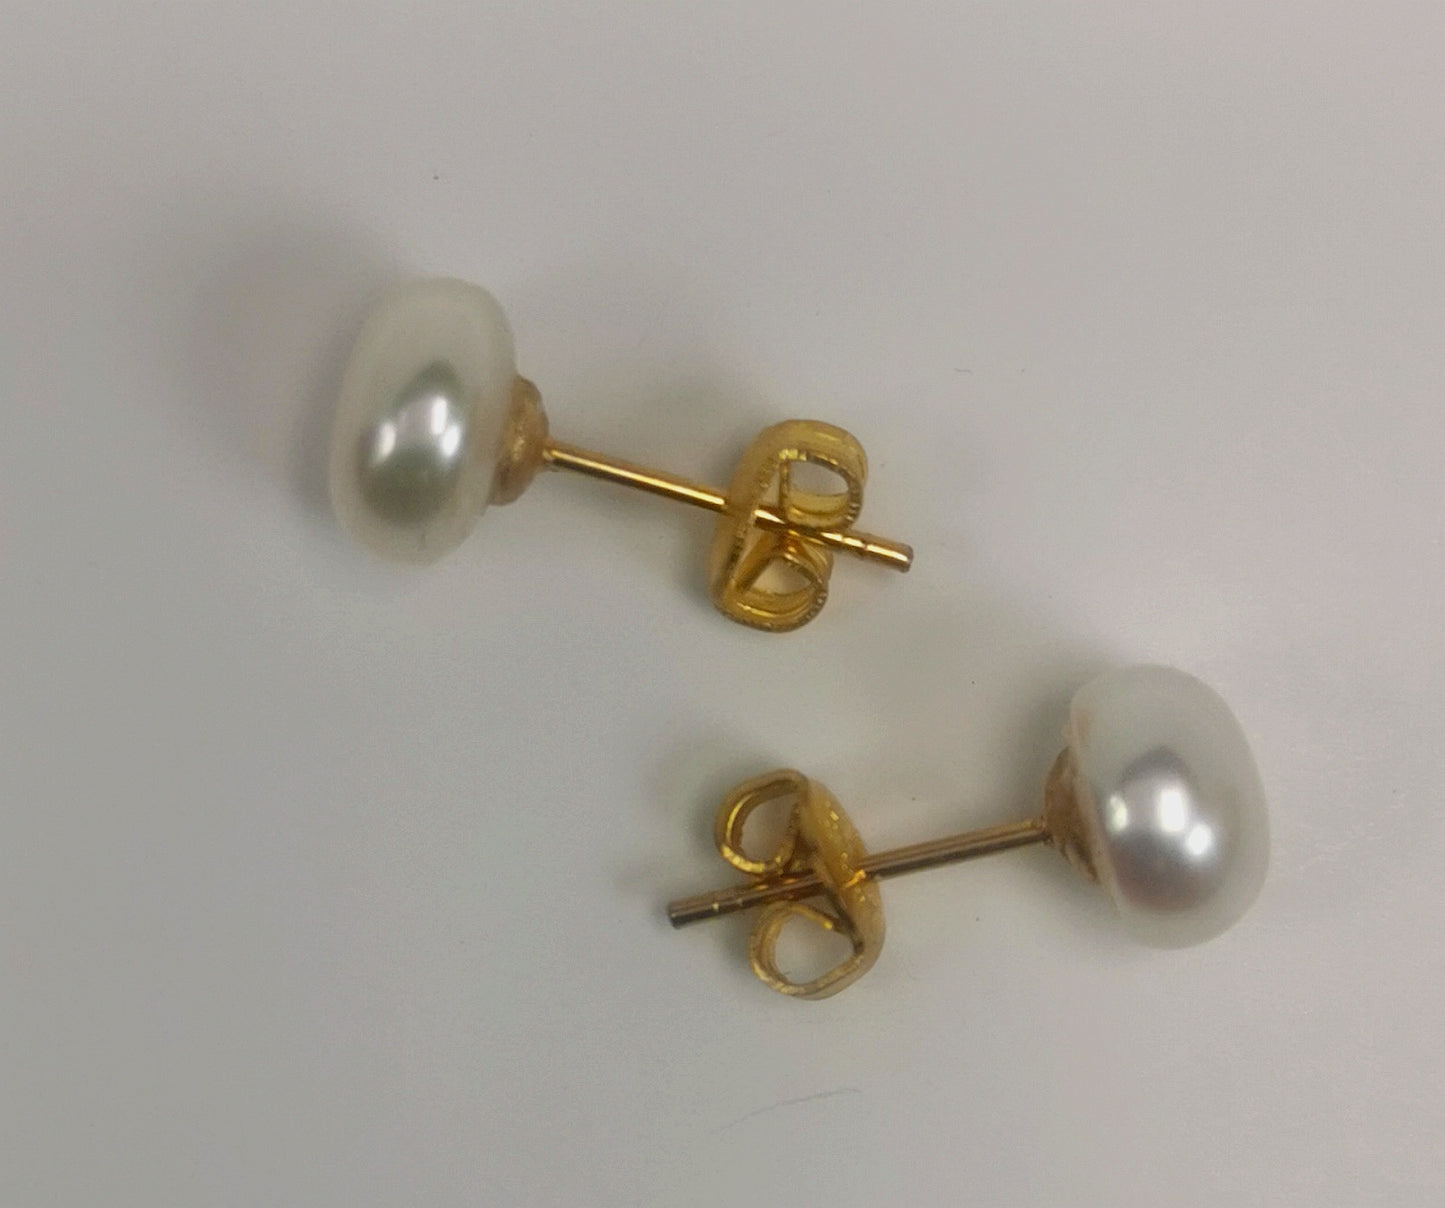 Boucles d'oreilles perles de culture blanches 9mm montées sur clous plaqués or. Présentées à l'horizontale, l'une au dessus de l'autre, boucle de dessus perle à gauche, celle de dessous perle à droite, posées sur un fond blanc. Vue de face.